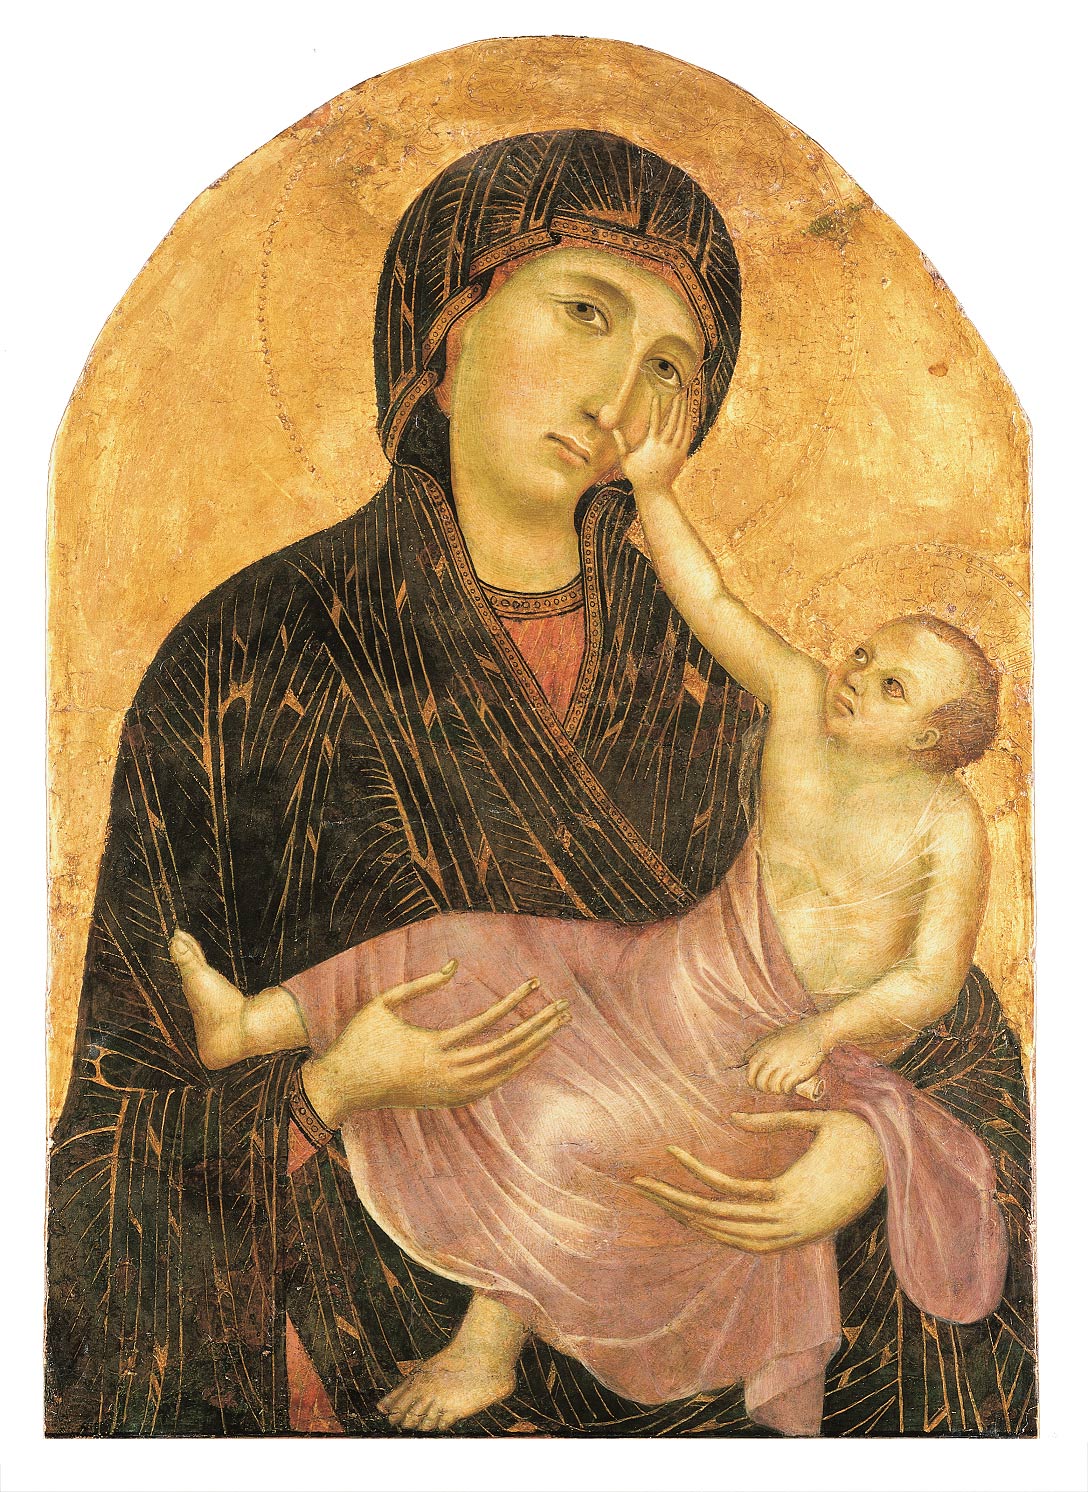 Cimabue e Giotto di Bondone?, Madonna col Bambino (1285 circa; tempera su tavola, 68 x 47 cm; Castelfiorentino, Museo di Arte Sacra di Santa Verdiana) 
